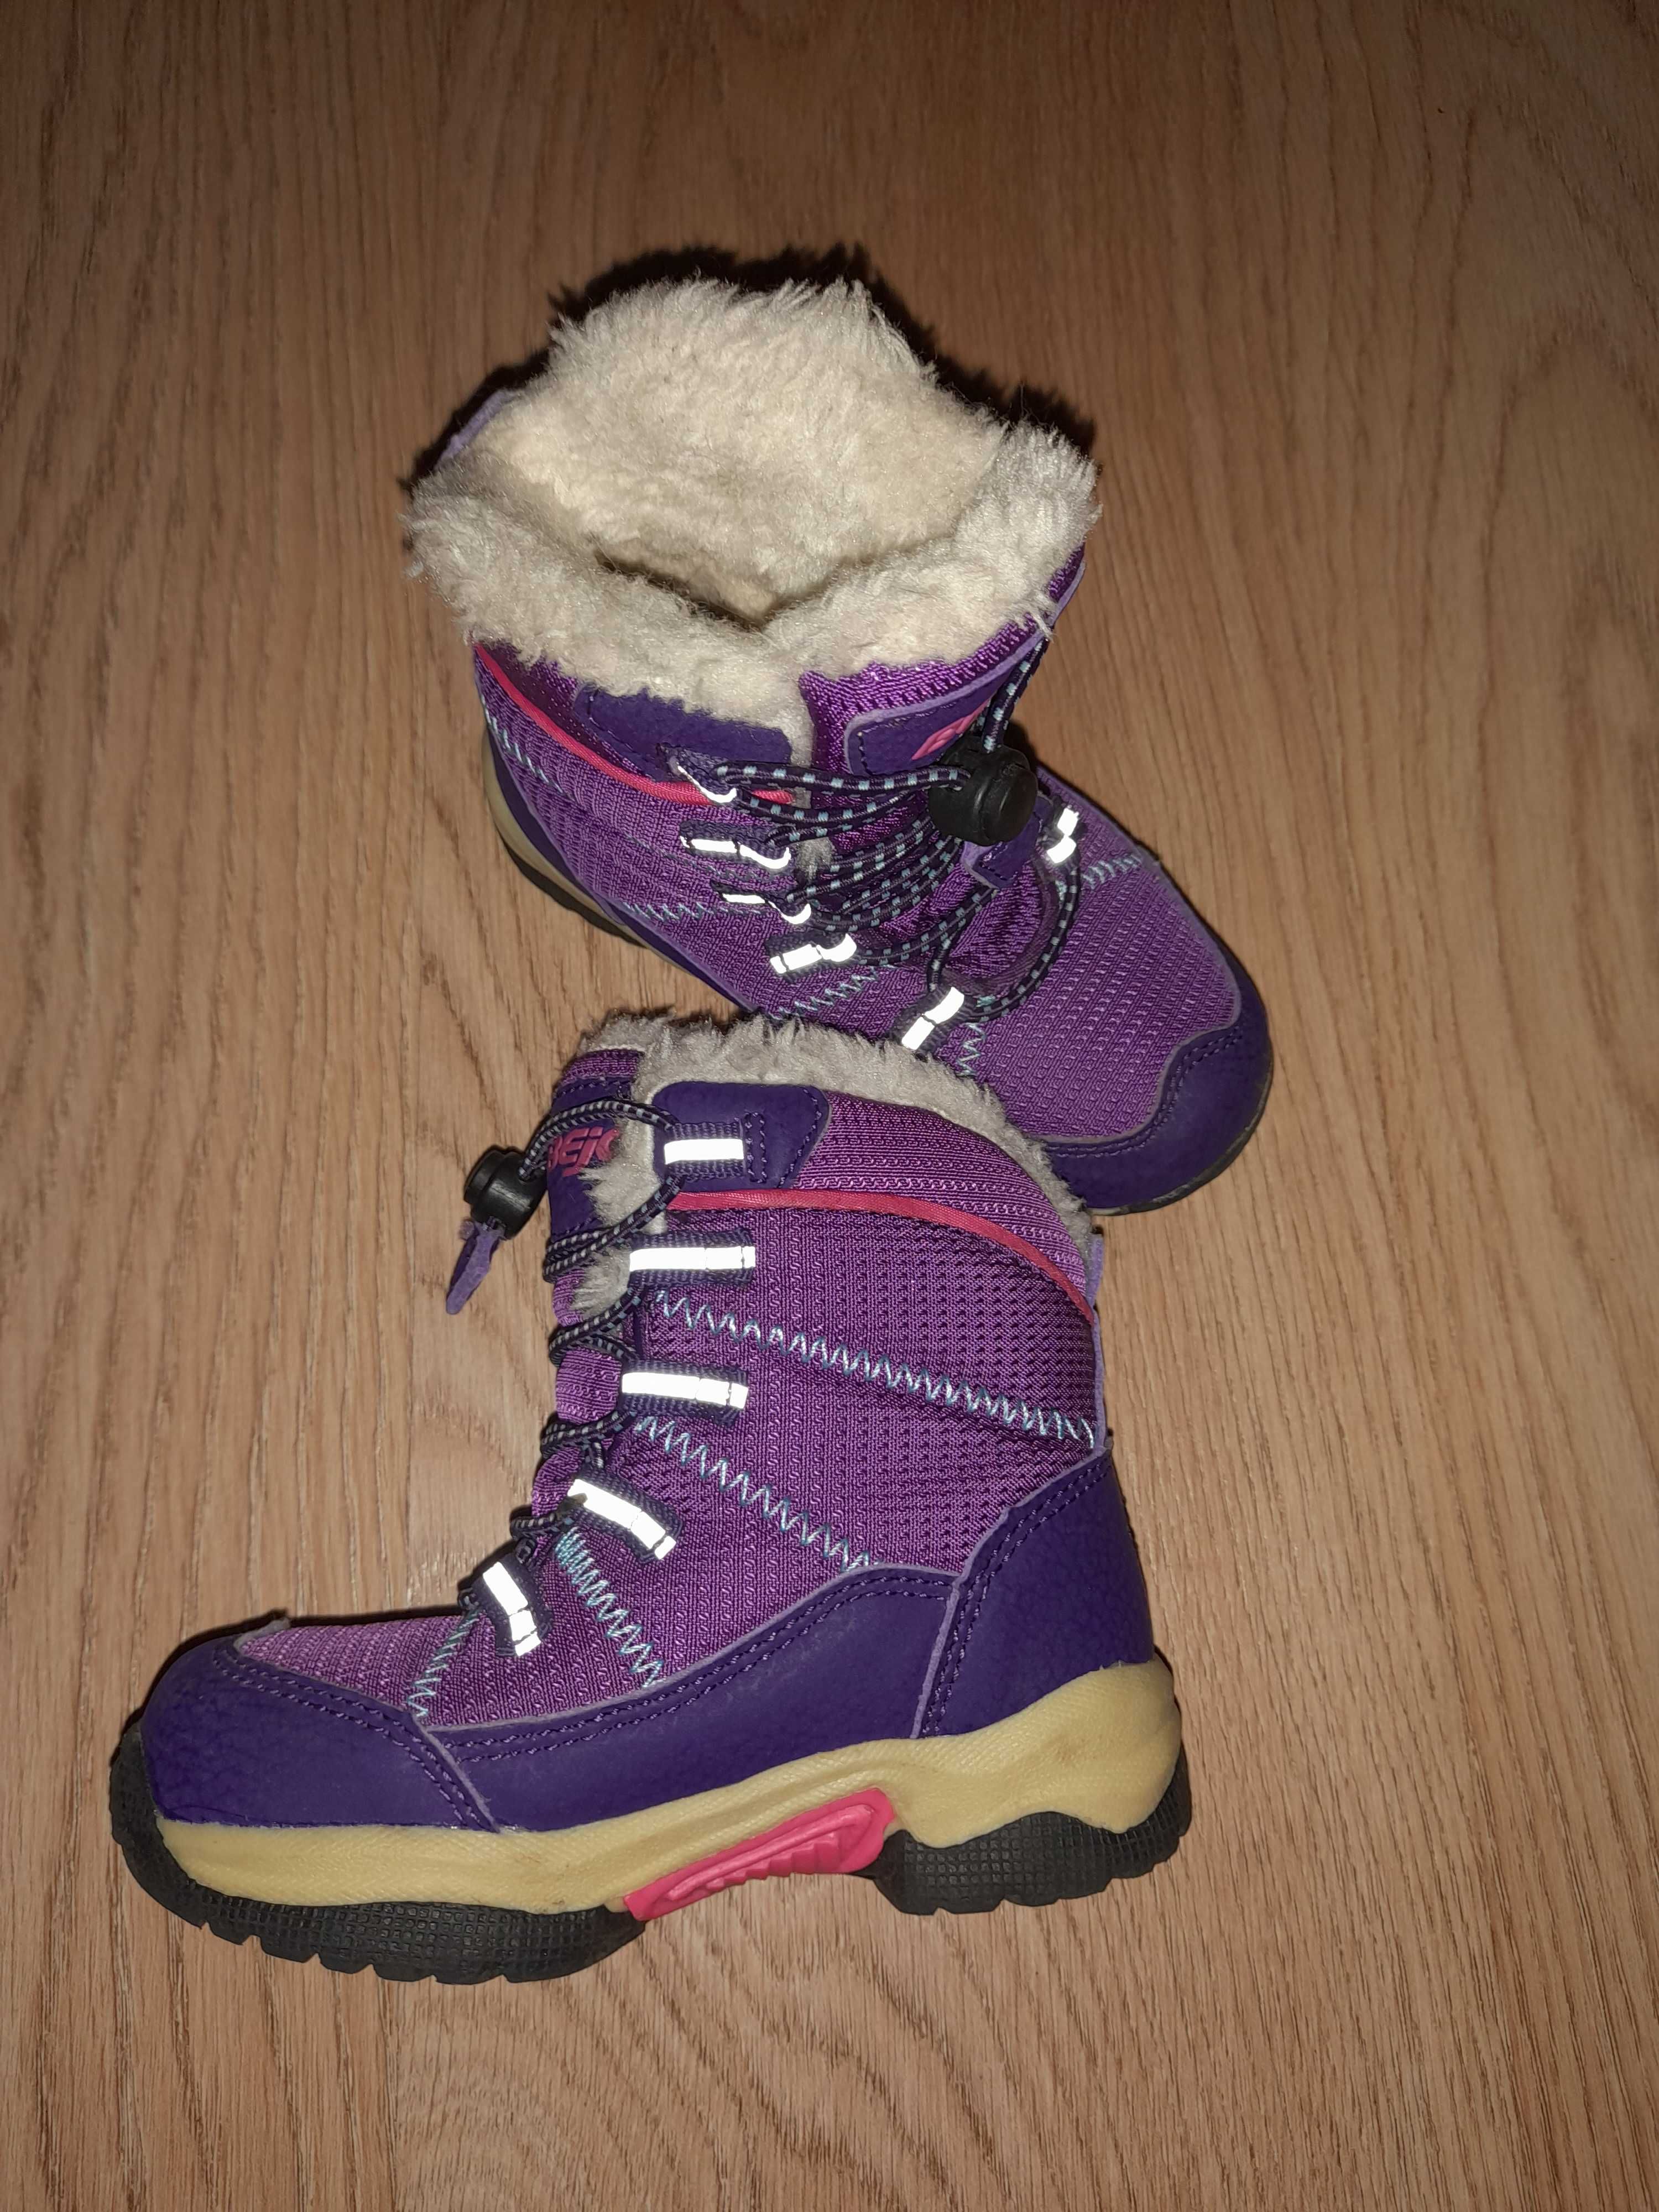 Зимові ботінки(зимние ботинки)для дівчинки фірми Bejo, розмір 23